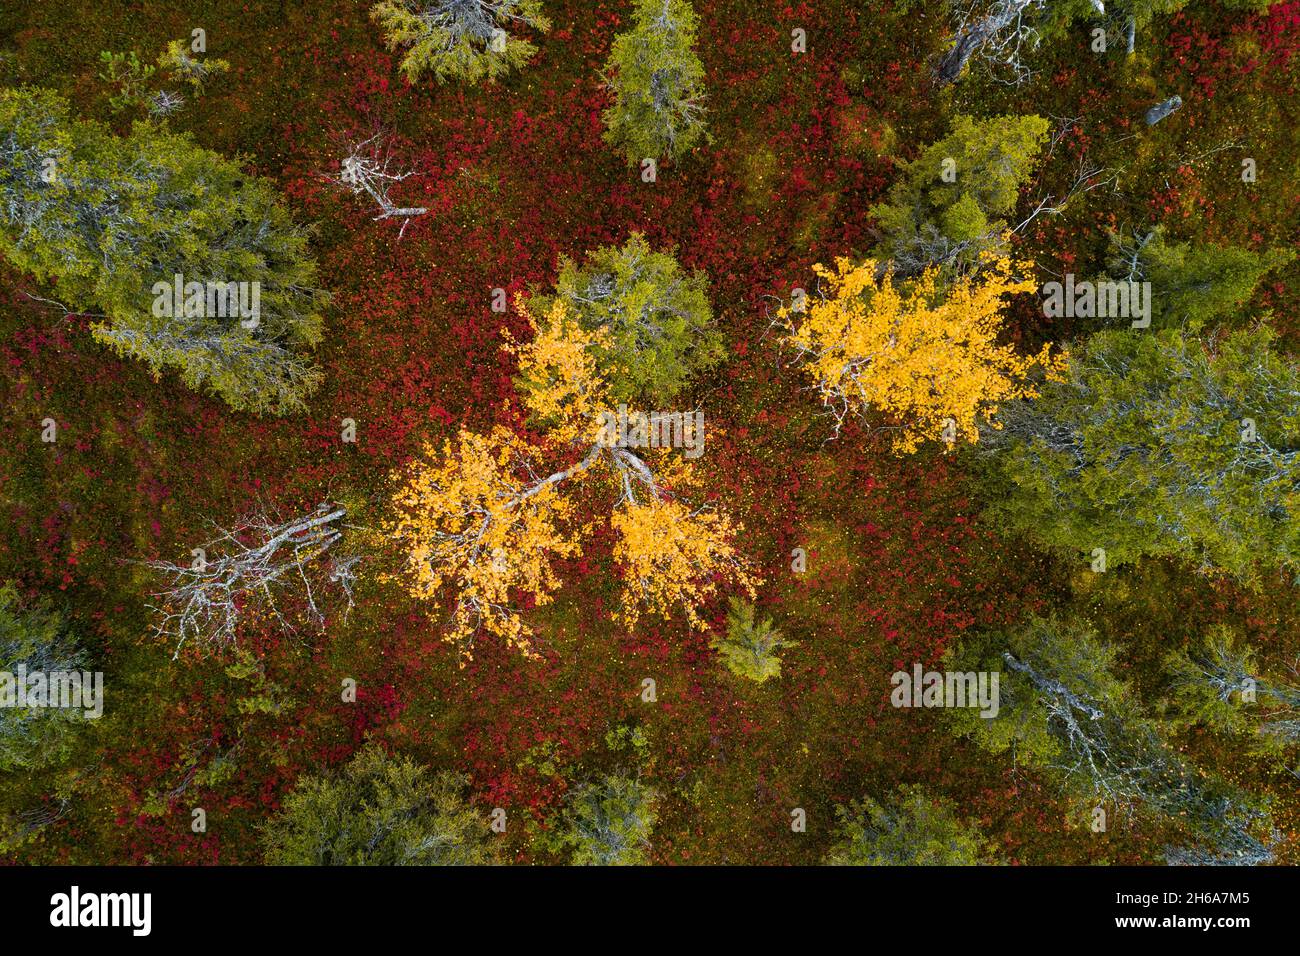 Une vue aérienne du feuillage d'automne coloré dans le parc national de Riisitunturi avec une belle forêt de taïga et des Birch jaune vif dans le nord de la Finlande. Banque D'Images